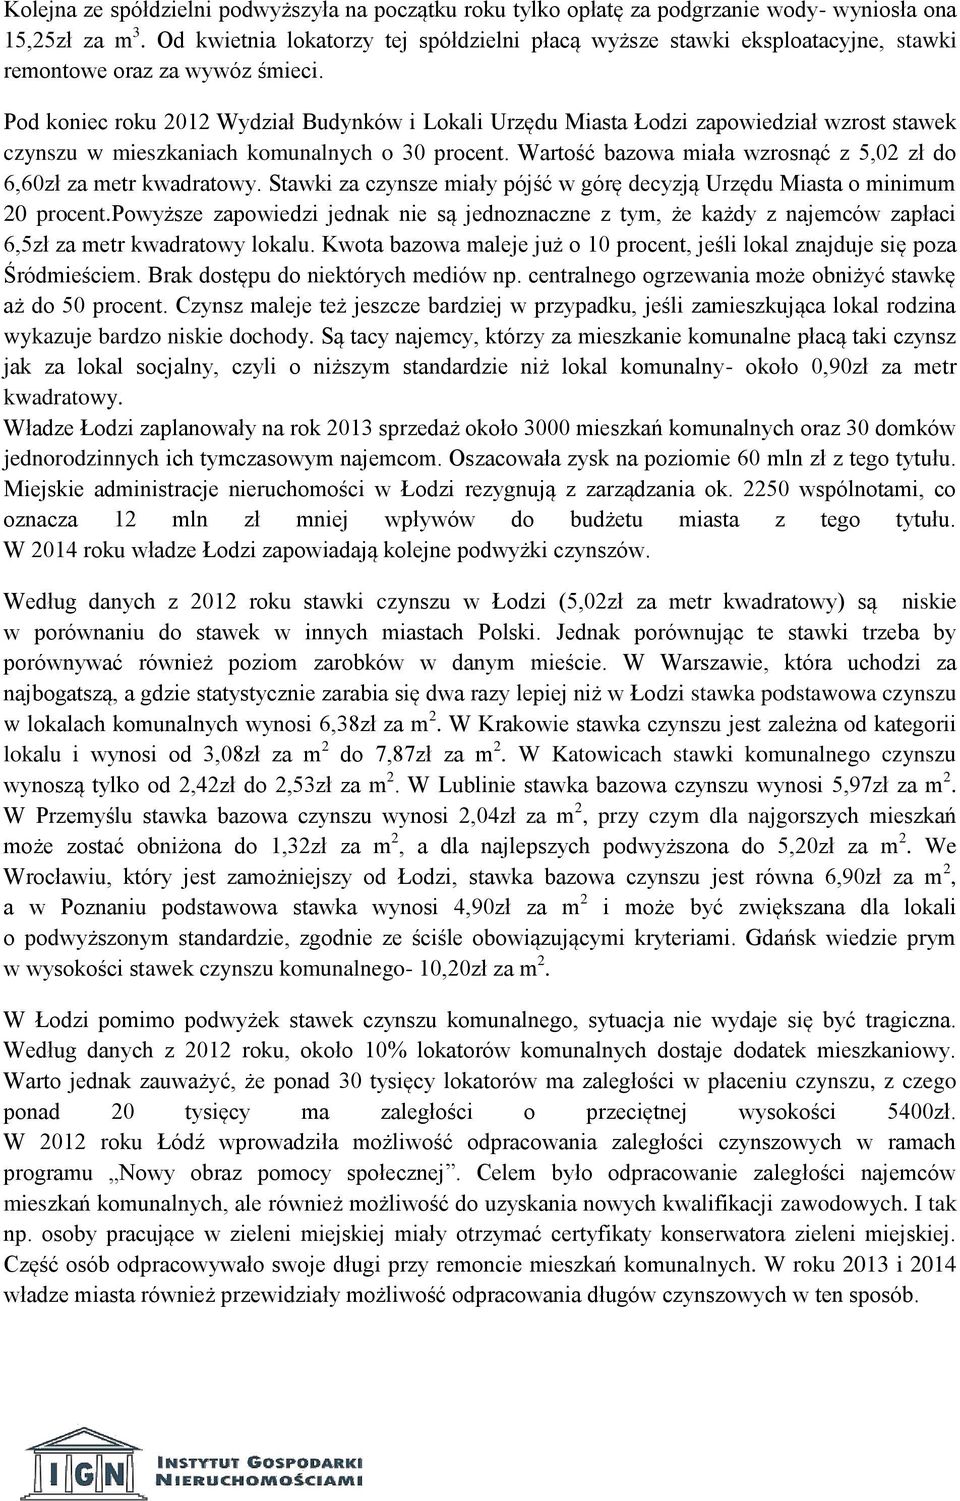 Pod koniec roku 2012 Wydział Budynków i Lokali Urzędu Miasta Łodzi zapowiedział wzrost stawek czynszu w mieszkaniach komunalnych o 30 procent.